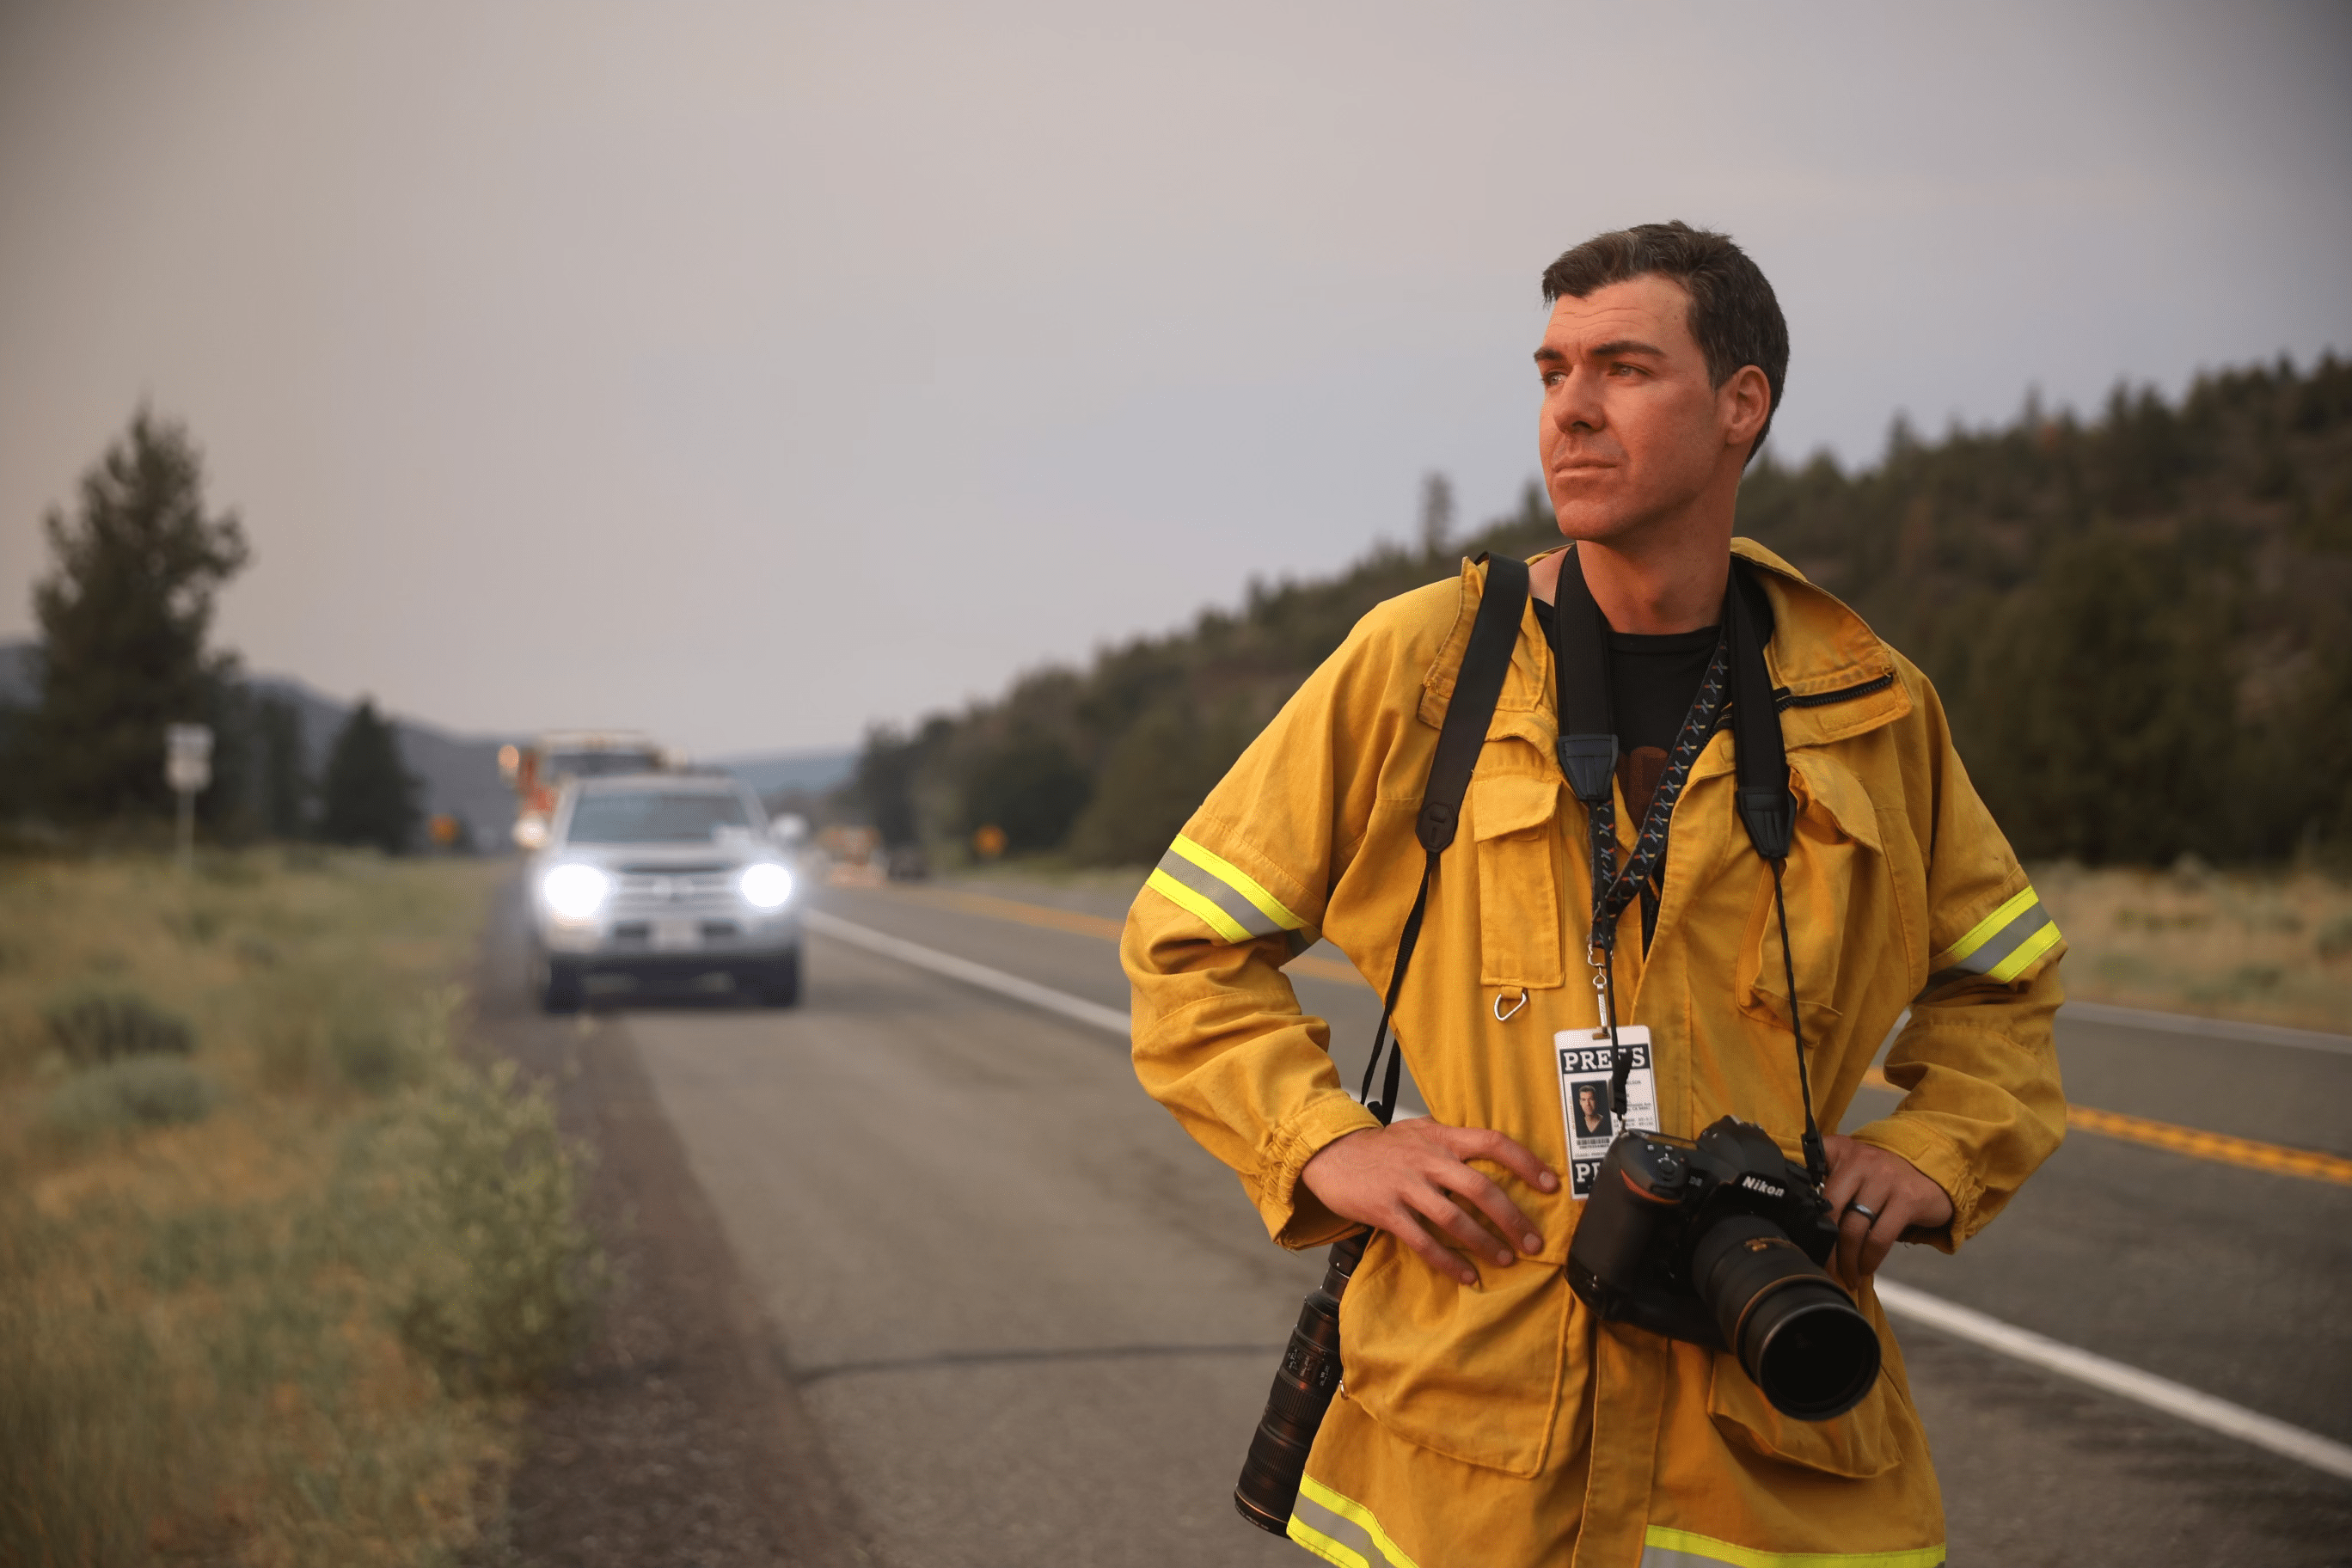 Fotografen Josh Edelson undersöker ett landskap medan han står på en väg med en kamera och pressbricka runt halsen.